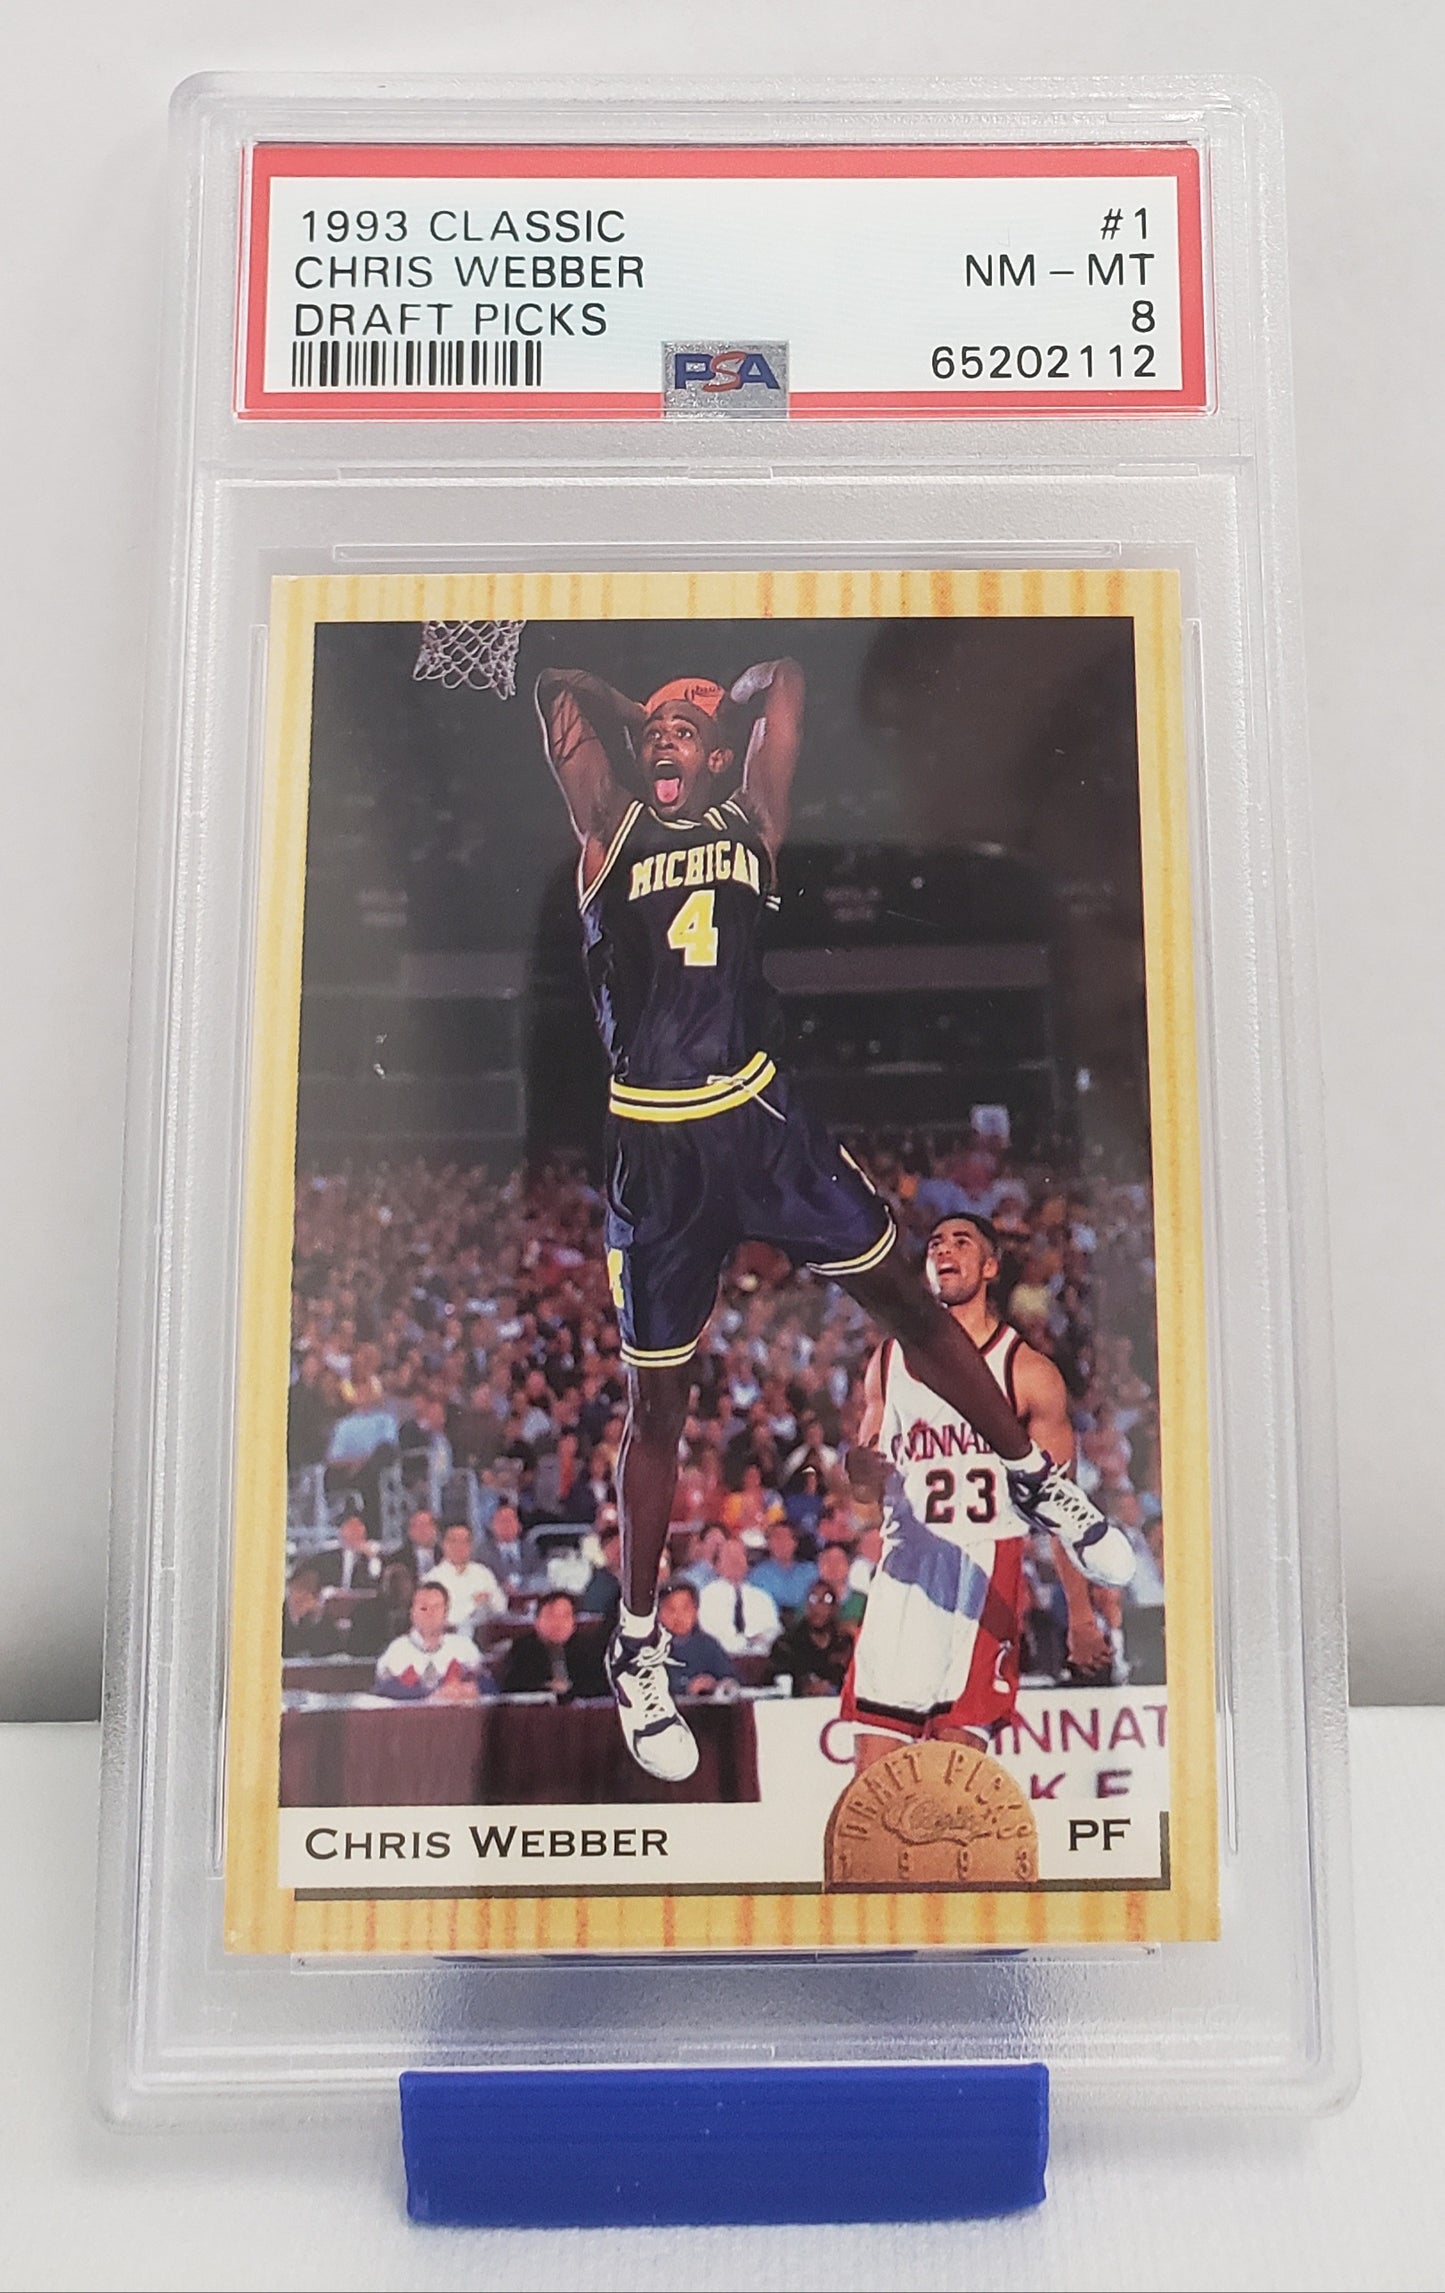 Chris Webber #1 Classic Draft Picks PSA 8